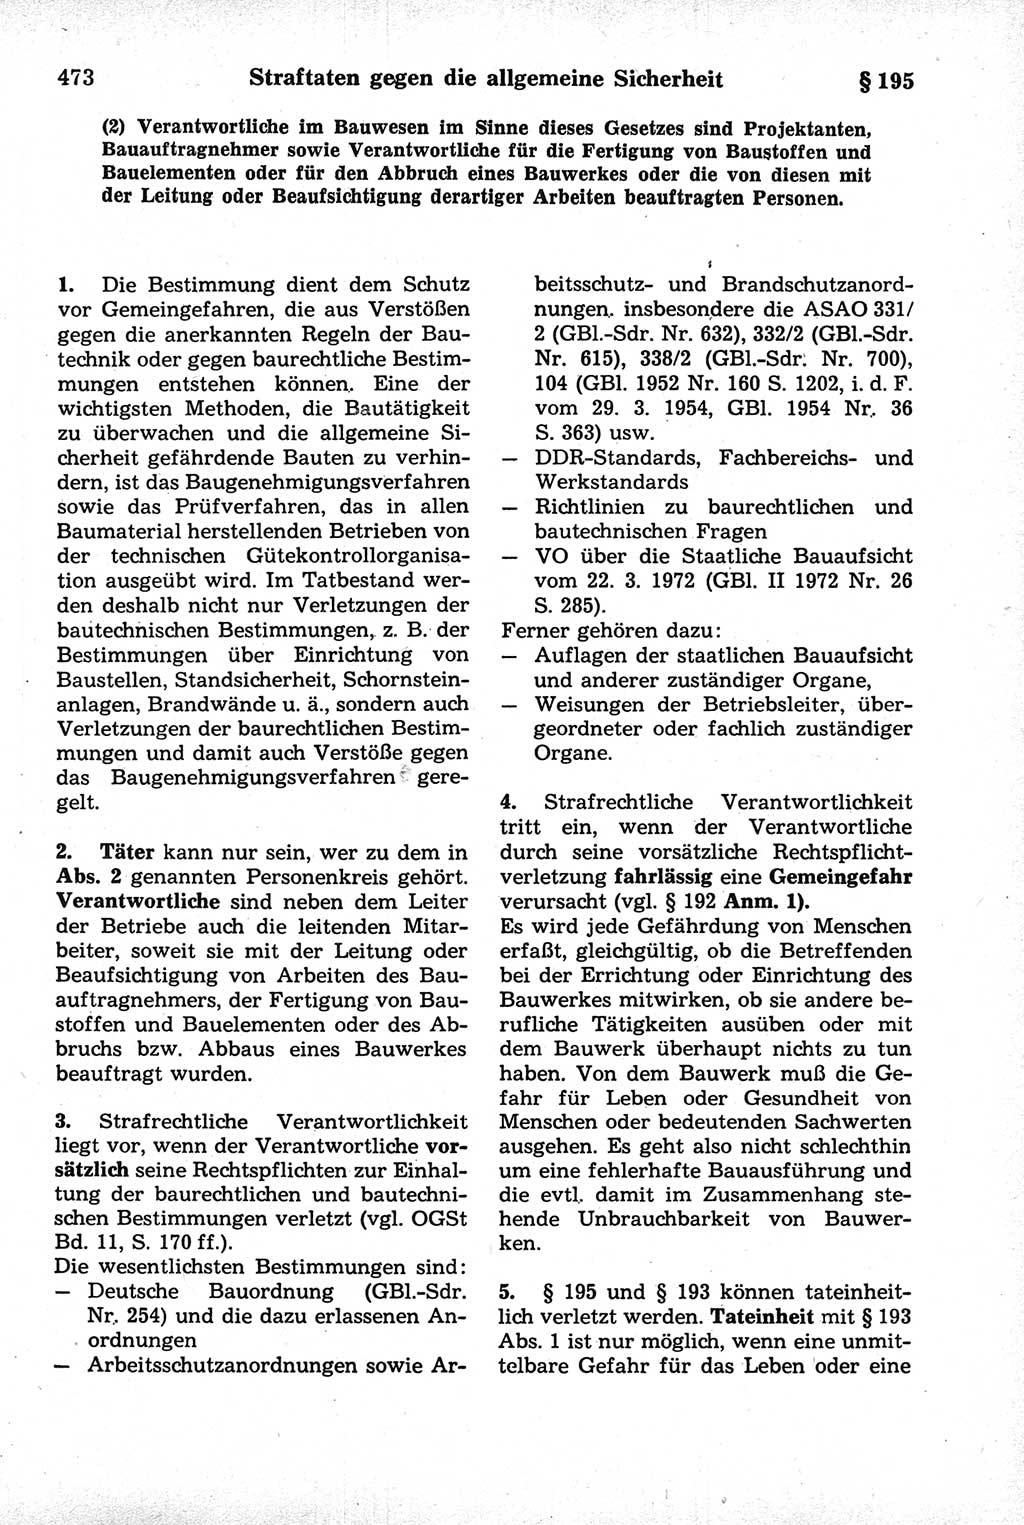 Strafrecht der Deutschen Demokratischen Republik (DDR), Kommentar zum Strafgesetzbuch (StGB) 1981, Seite 473 (Strafr. DDR Komm. StGB 1981, S. 473)